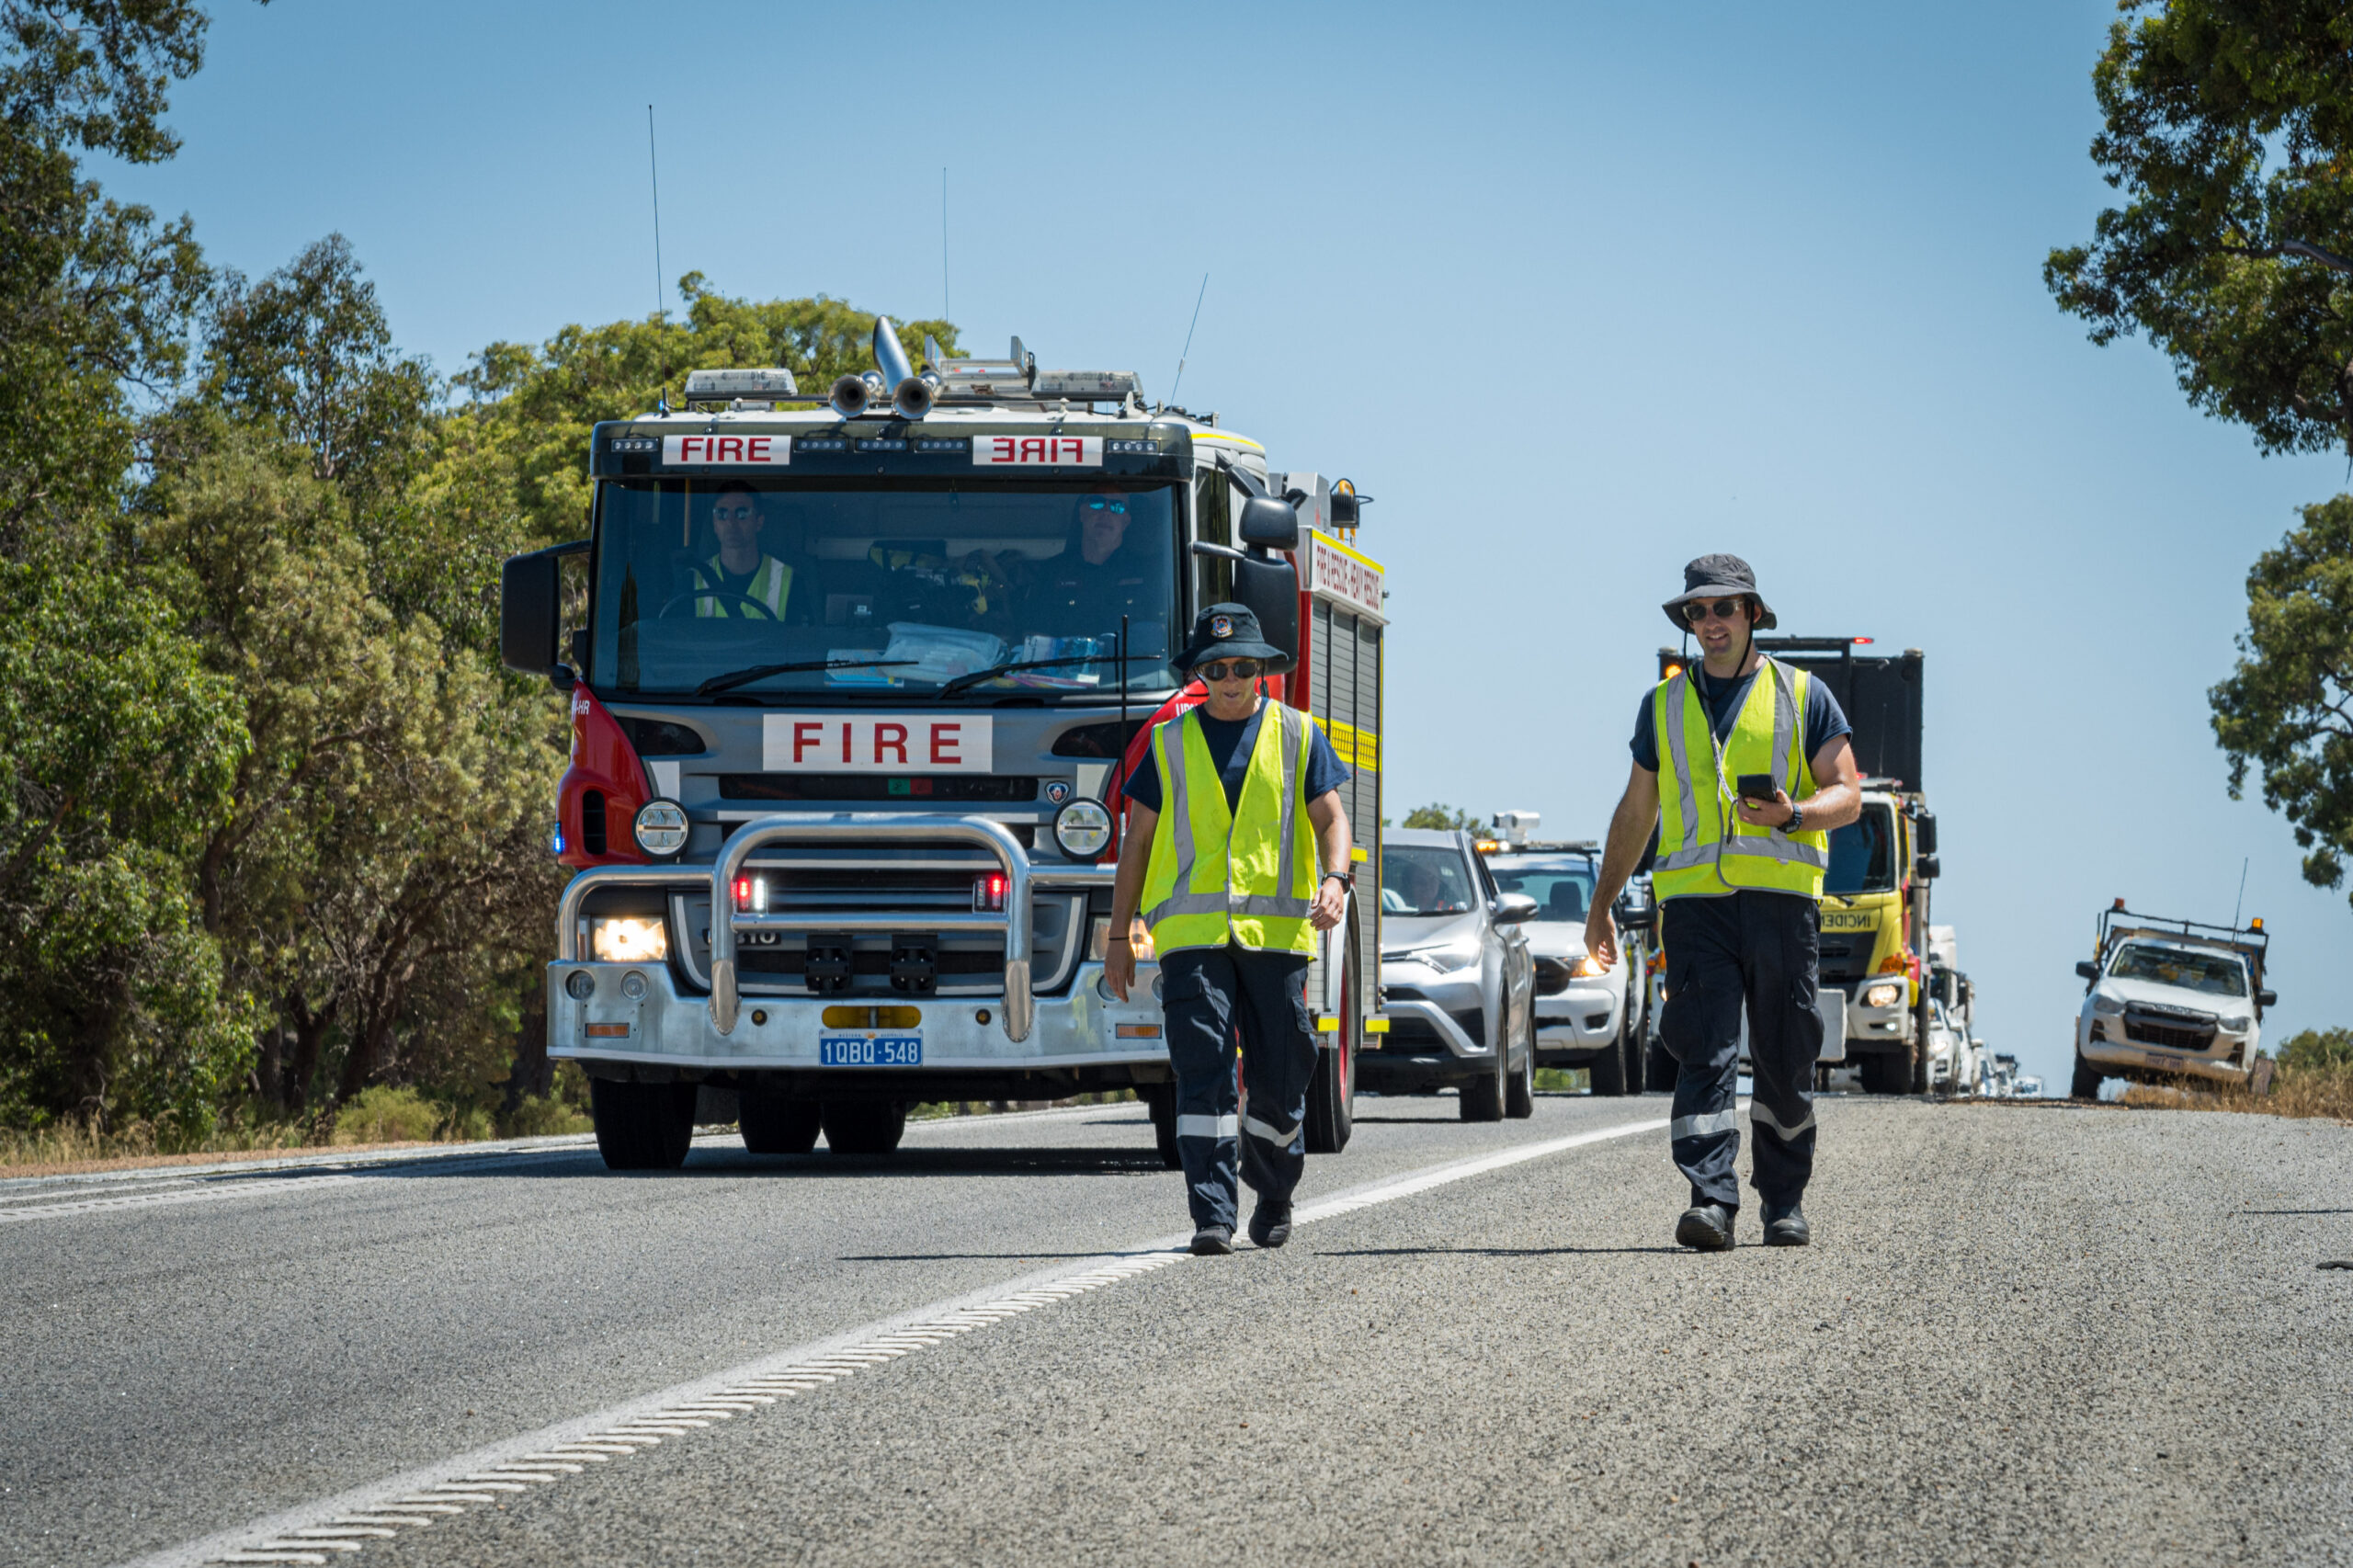 Mitarbeiter:innen des Department of Fire and Emergency Services suchen in West-Australien nach der Mini-Kapsel.